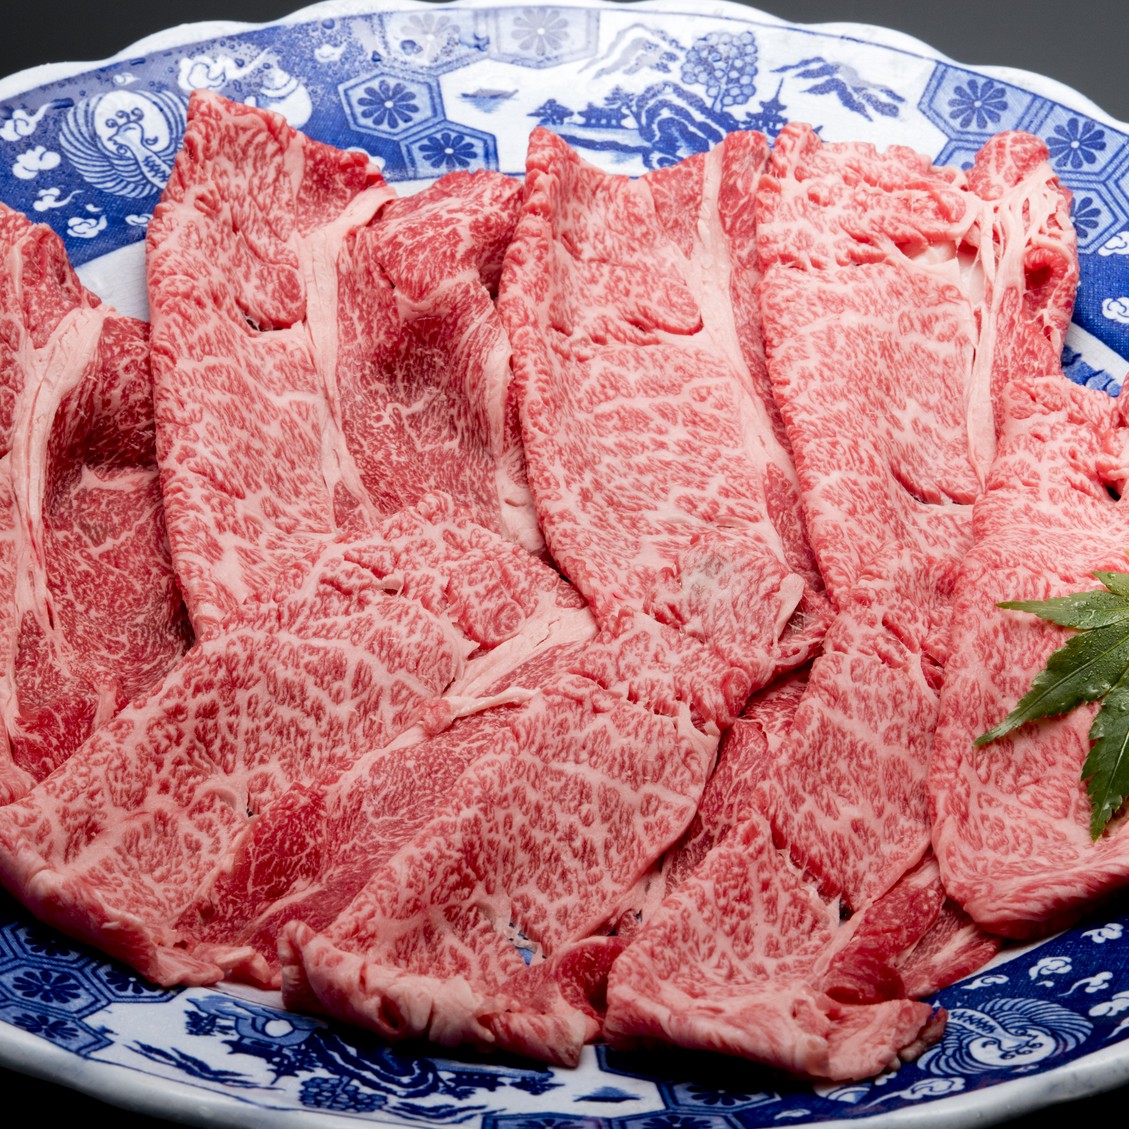 【平井牛】きめ細やかな脂、多くの料理人の舌をうならせる 京の都が誇る、肉の宝とも呼ばれる牛肉です。